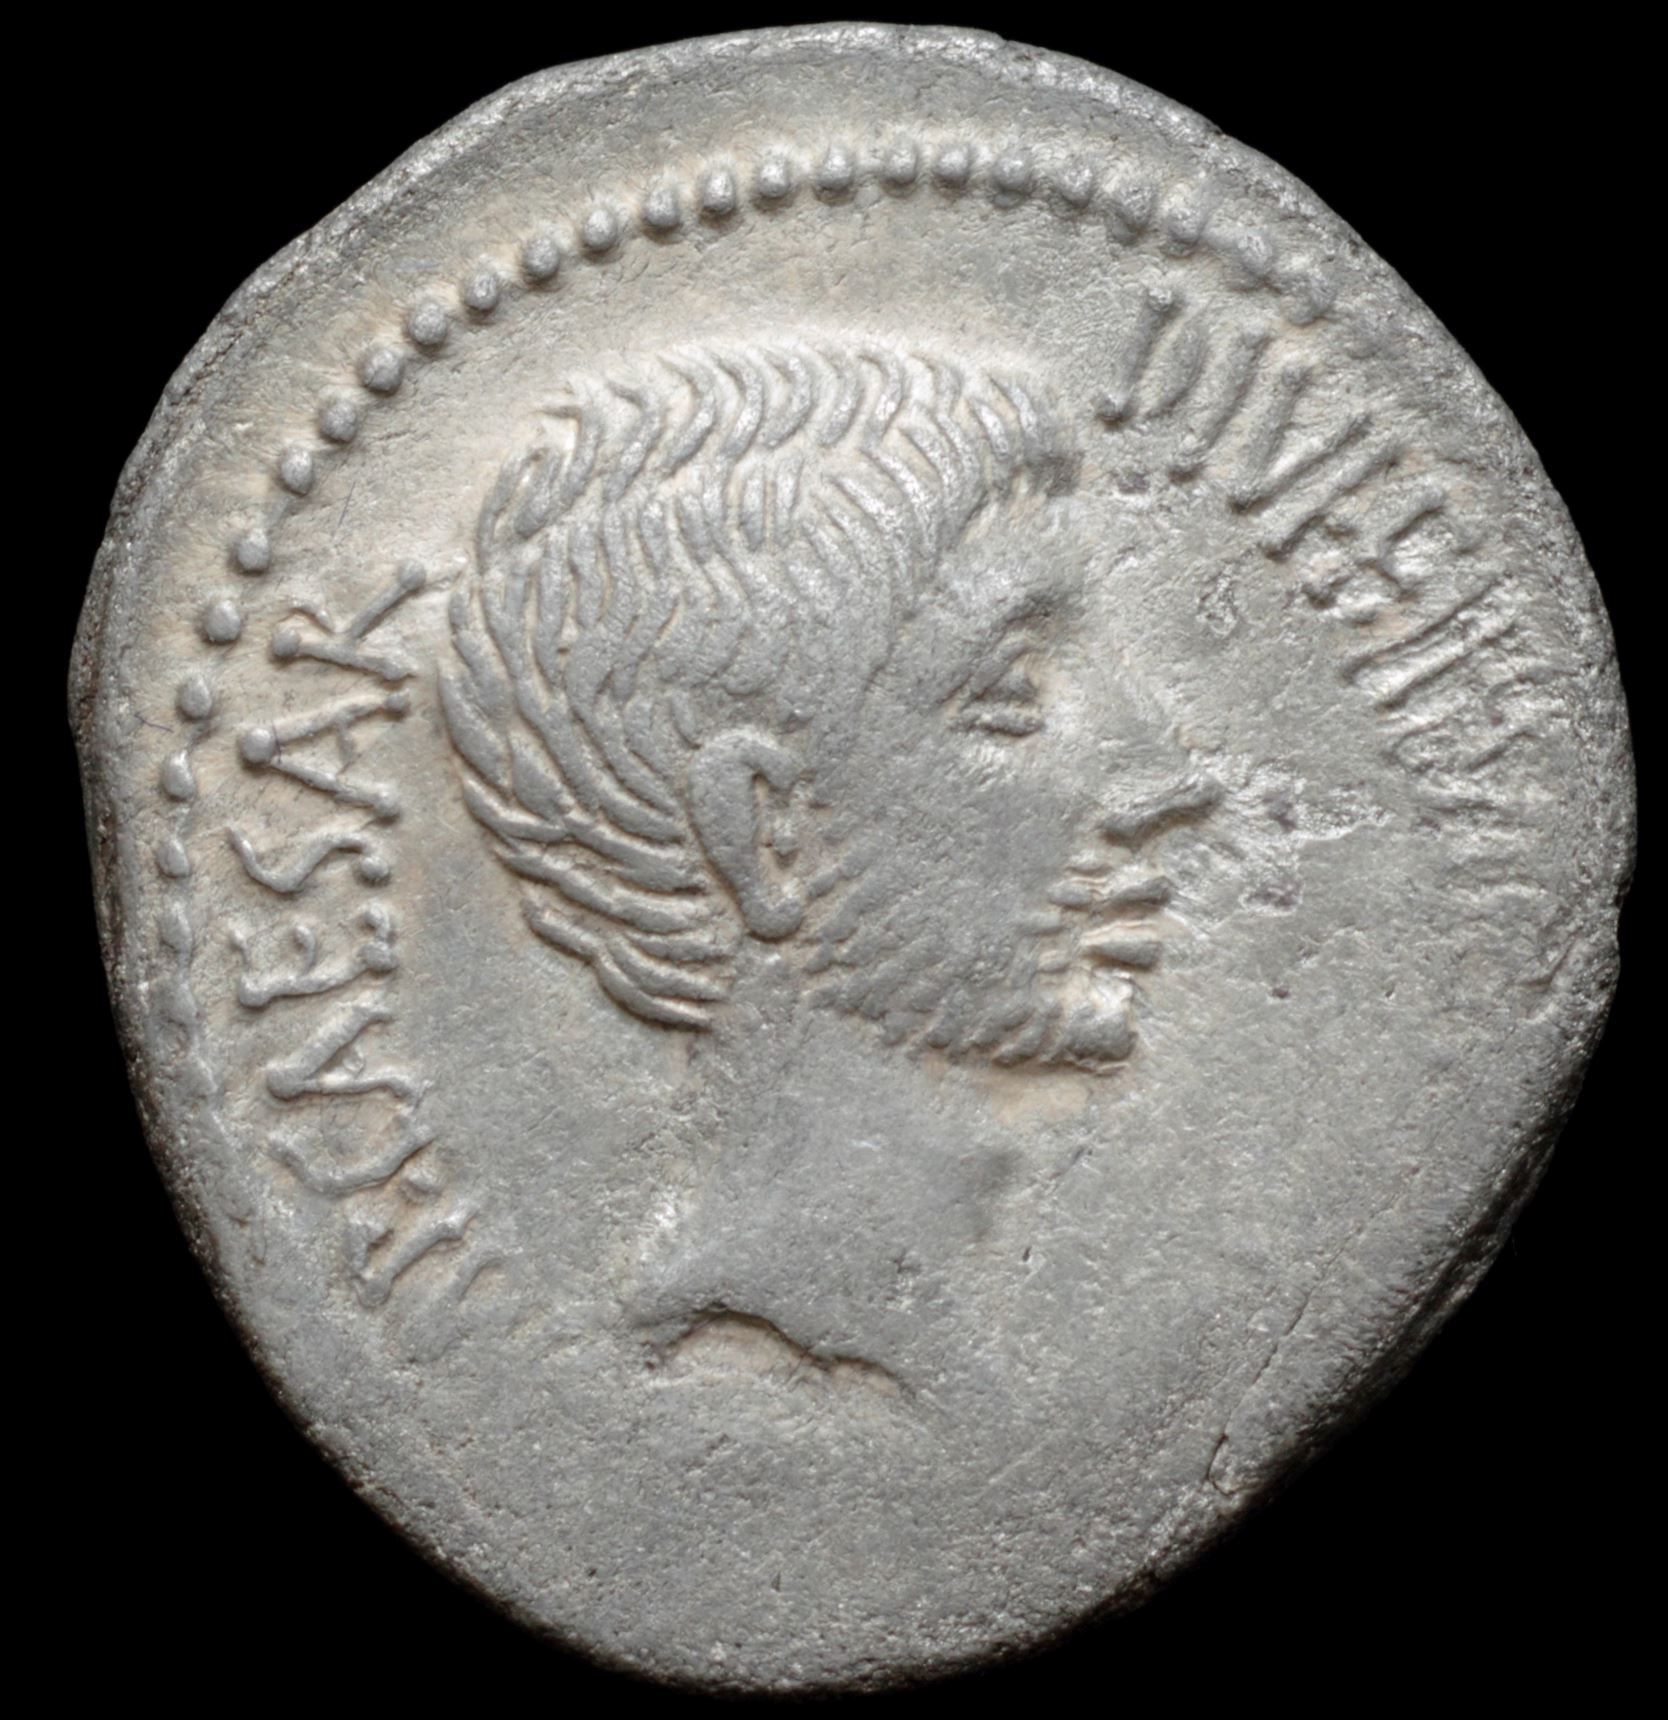 35-27 BC